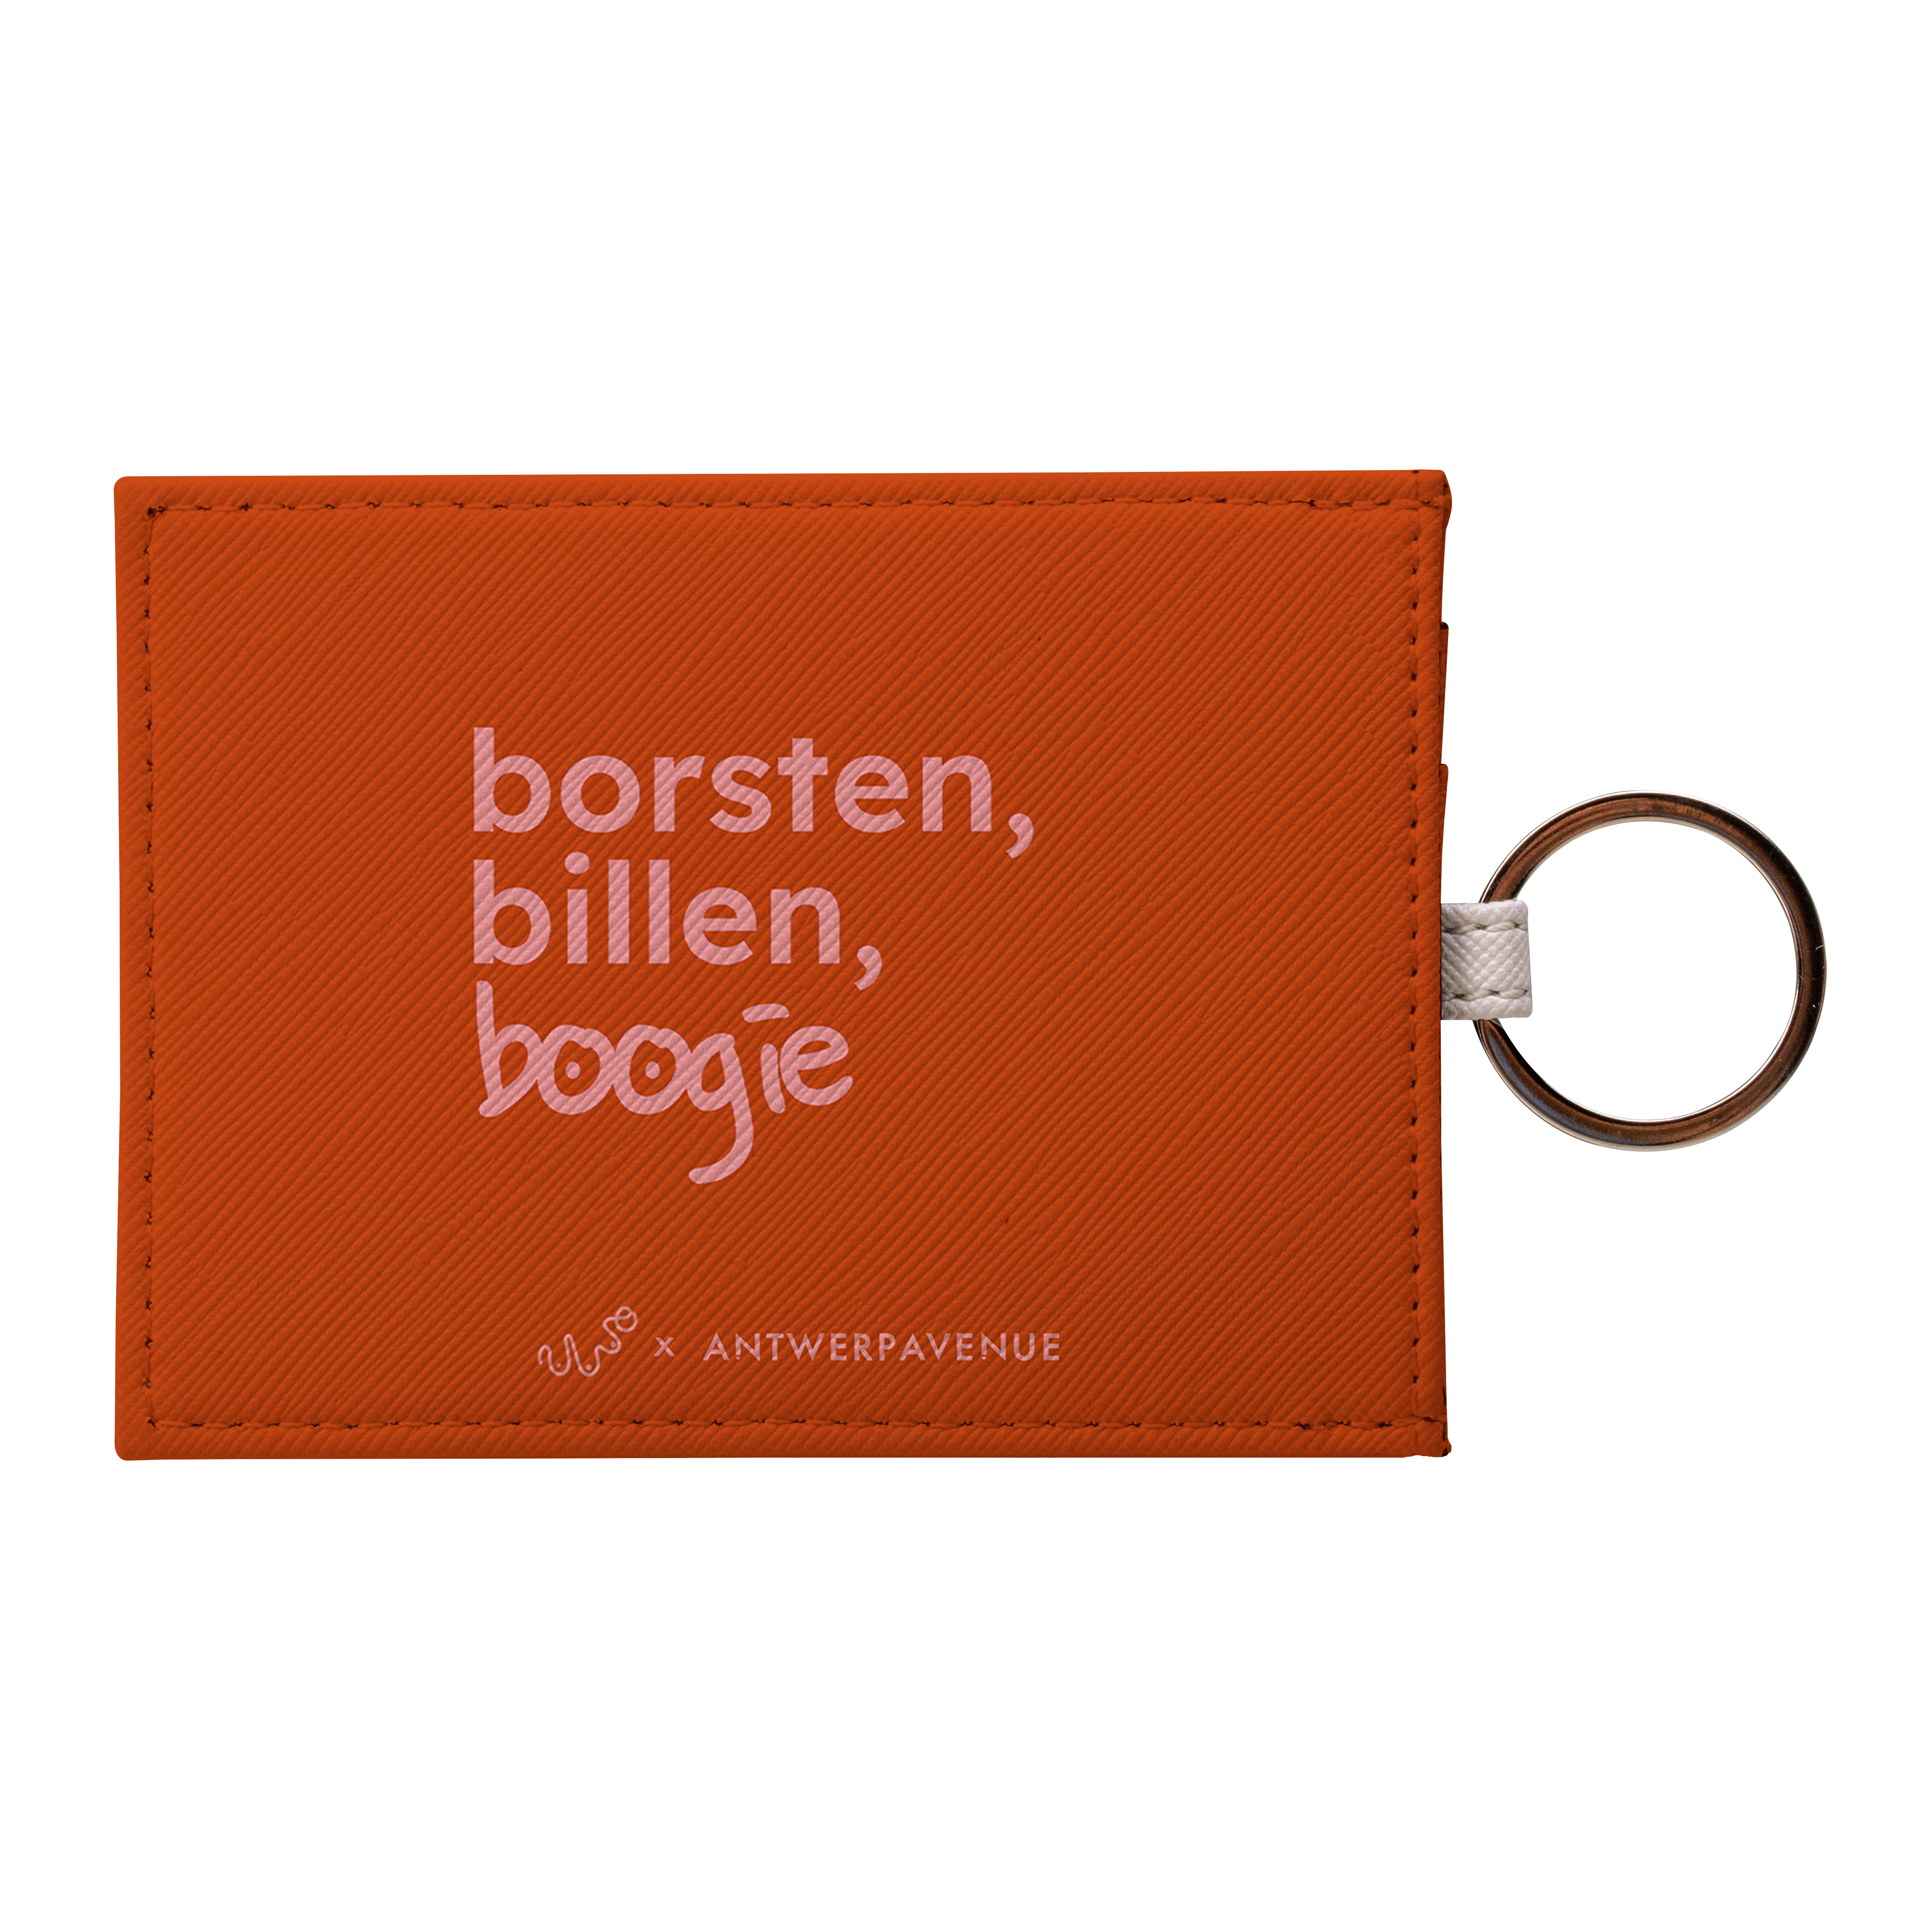 Borsten, Billen, Boogie (Orange) - Card Holder